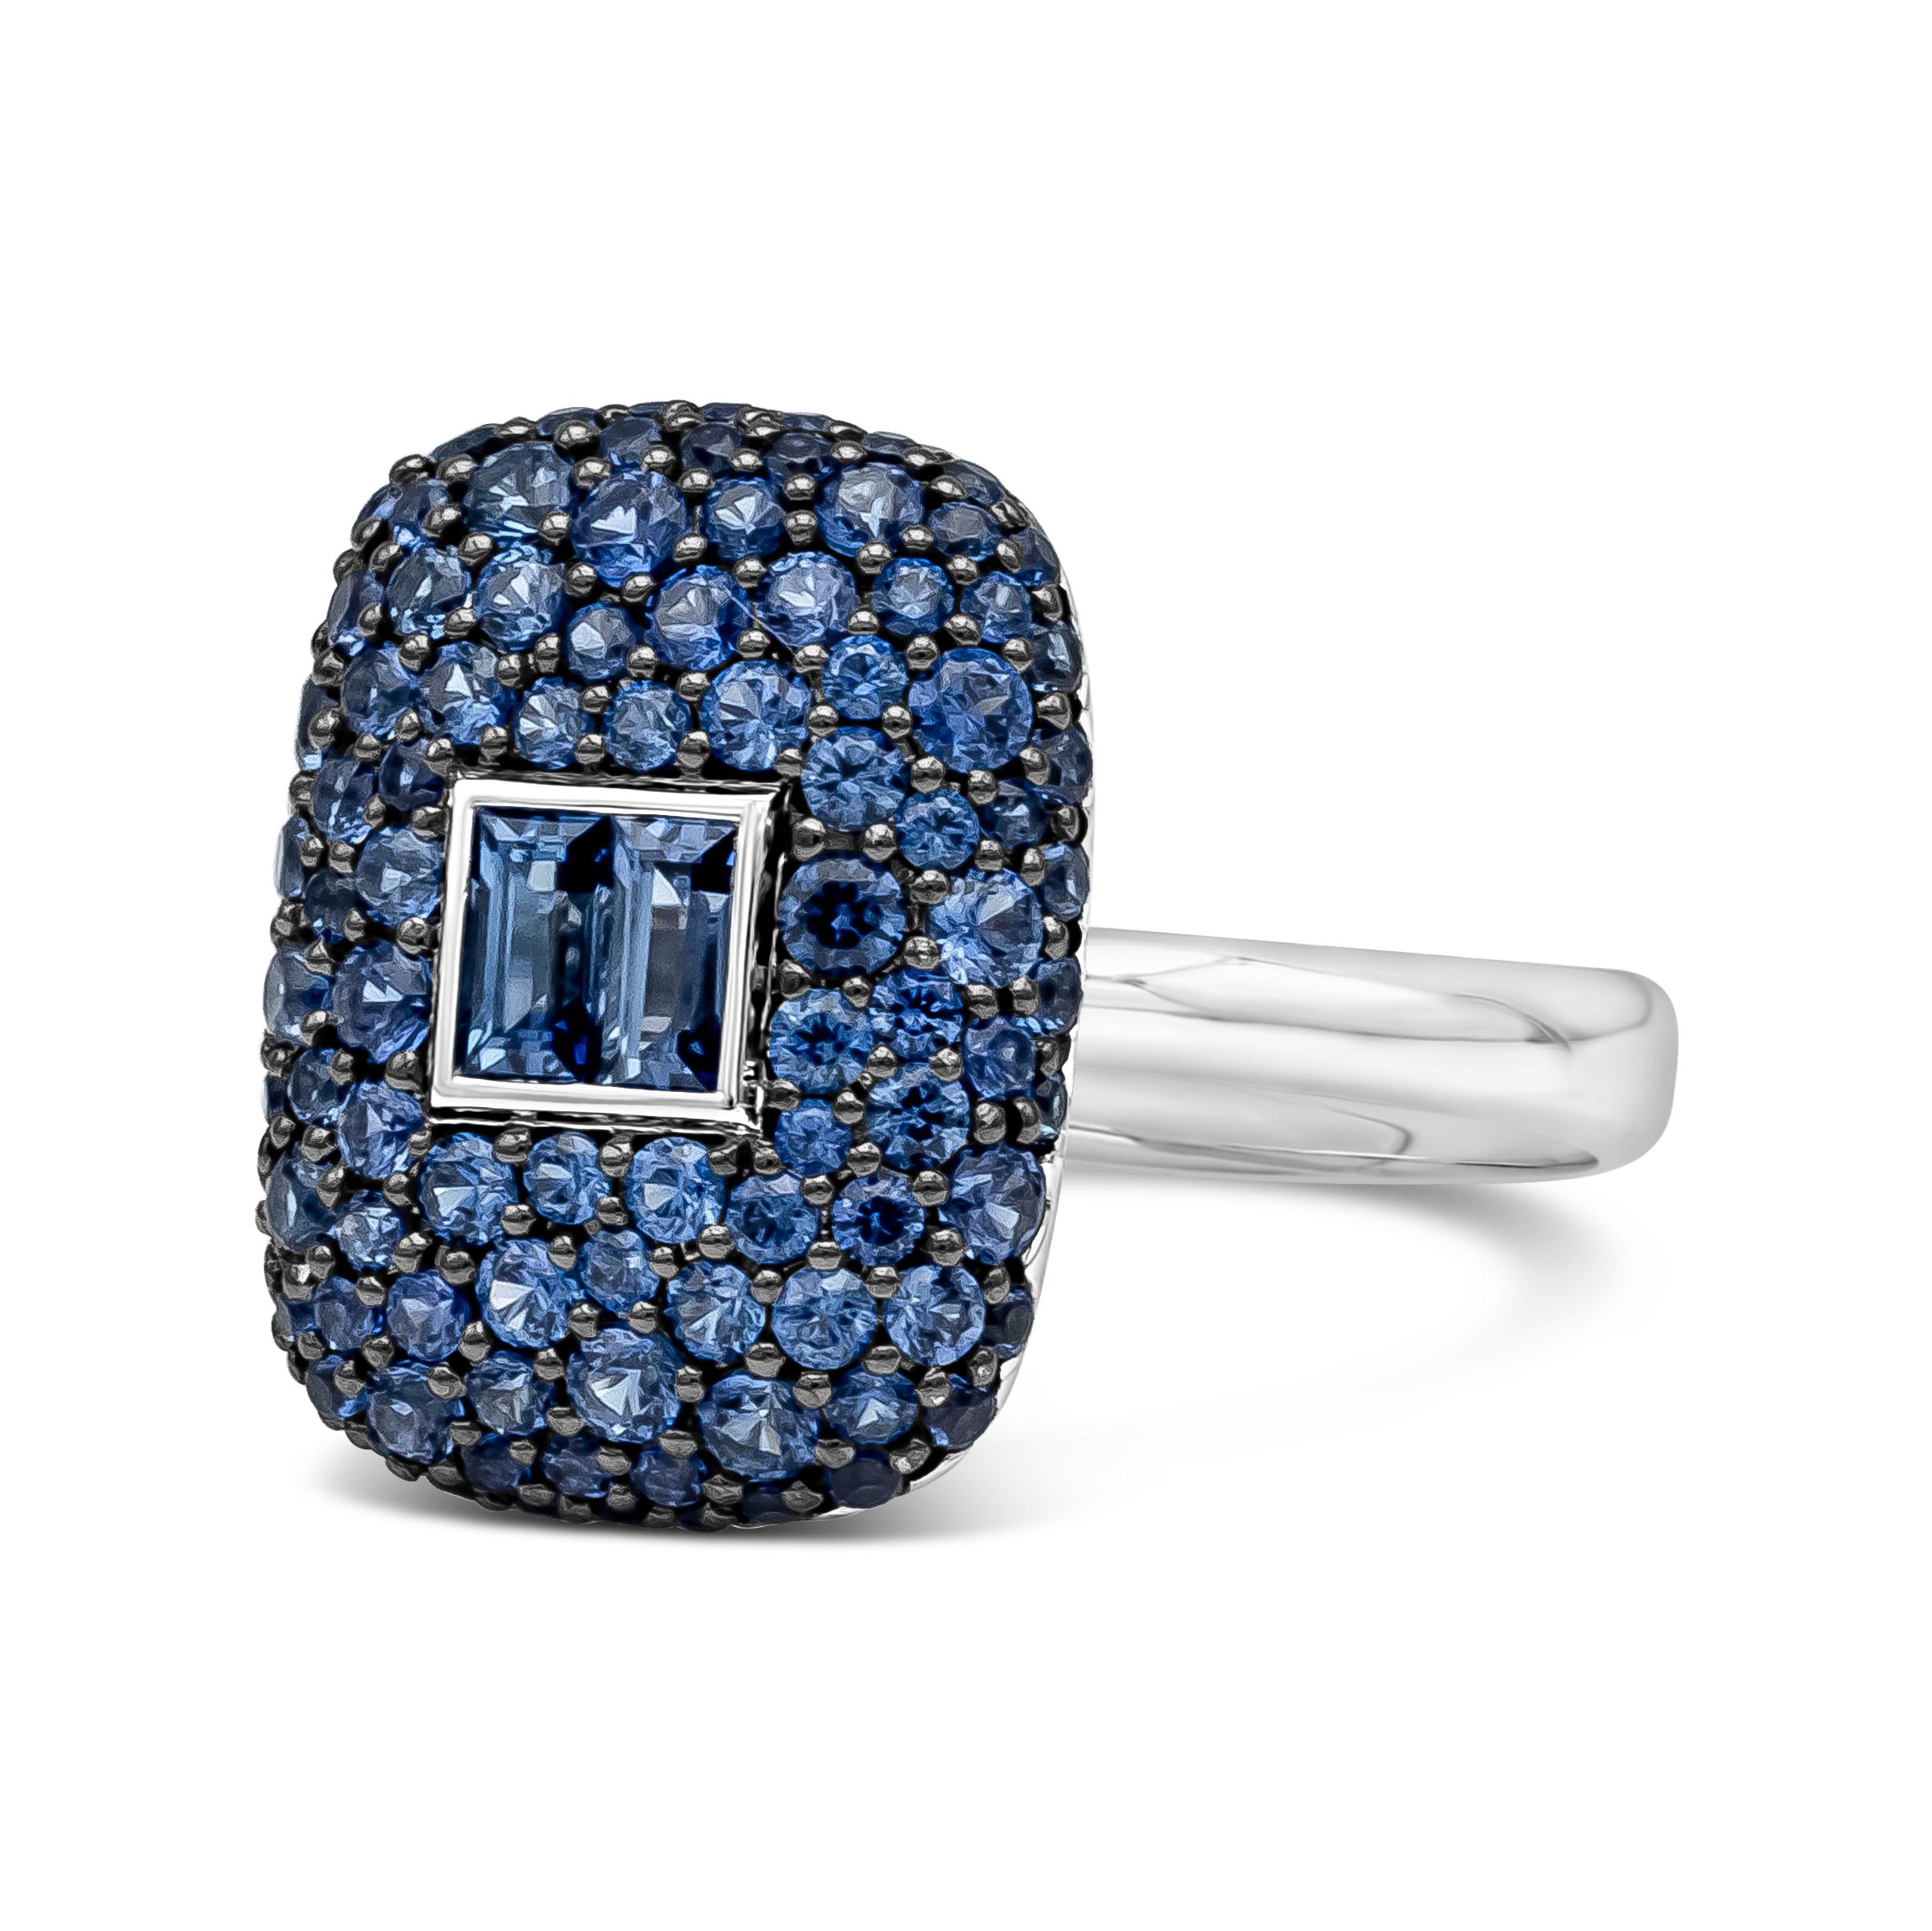 Cette bague de mode unique et élégante présente un total de 1,79 carat de saphirs bleus baguettes et ronds, sertis dans une monture en or blanc 18 carats. Taille 6.5 US. 
Le modèle est disponible en différentes pierres précieuses (diamant,